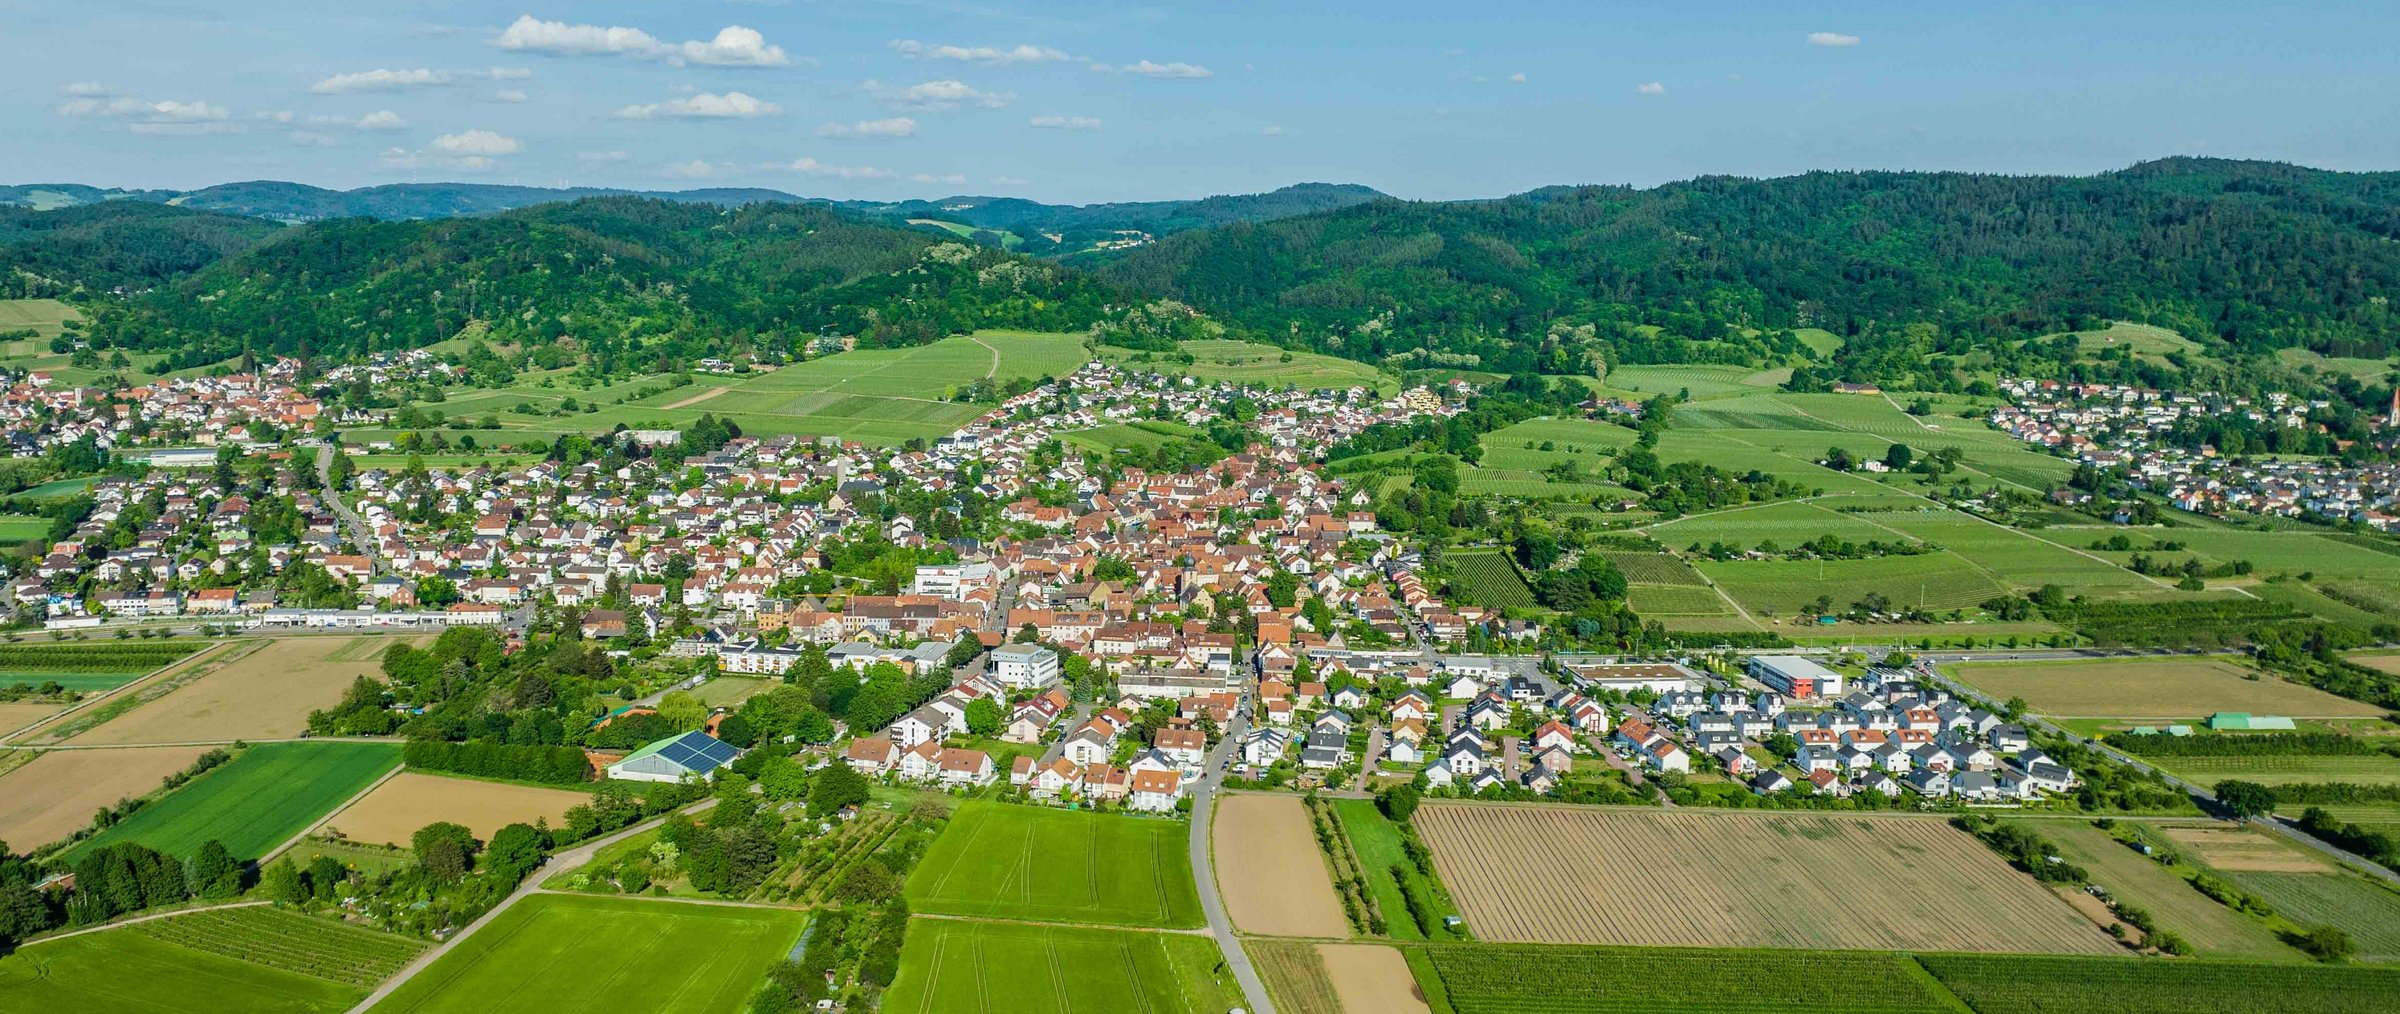 Luftbild von Großsachsen Richtung Odenwald